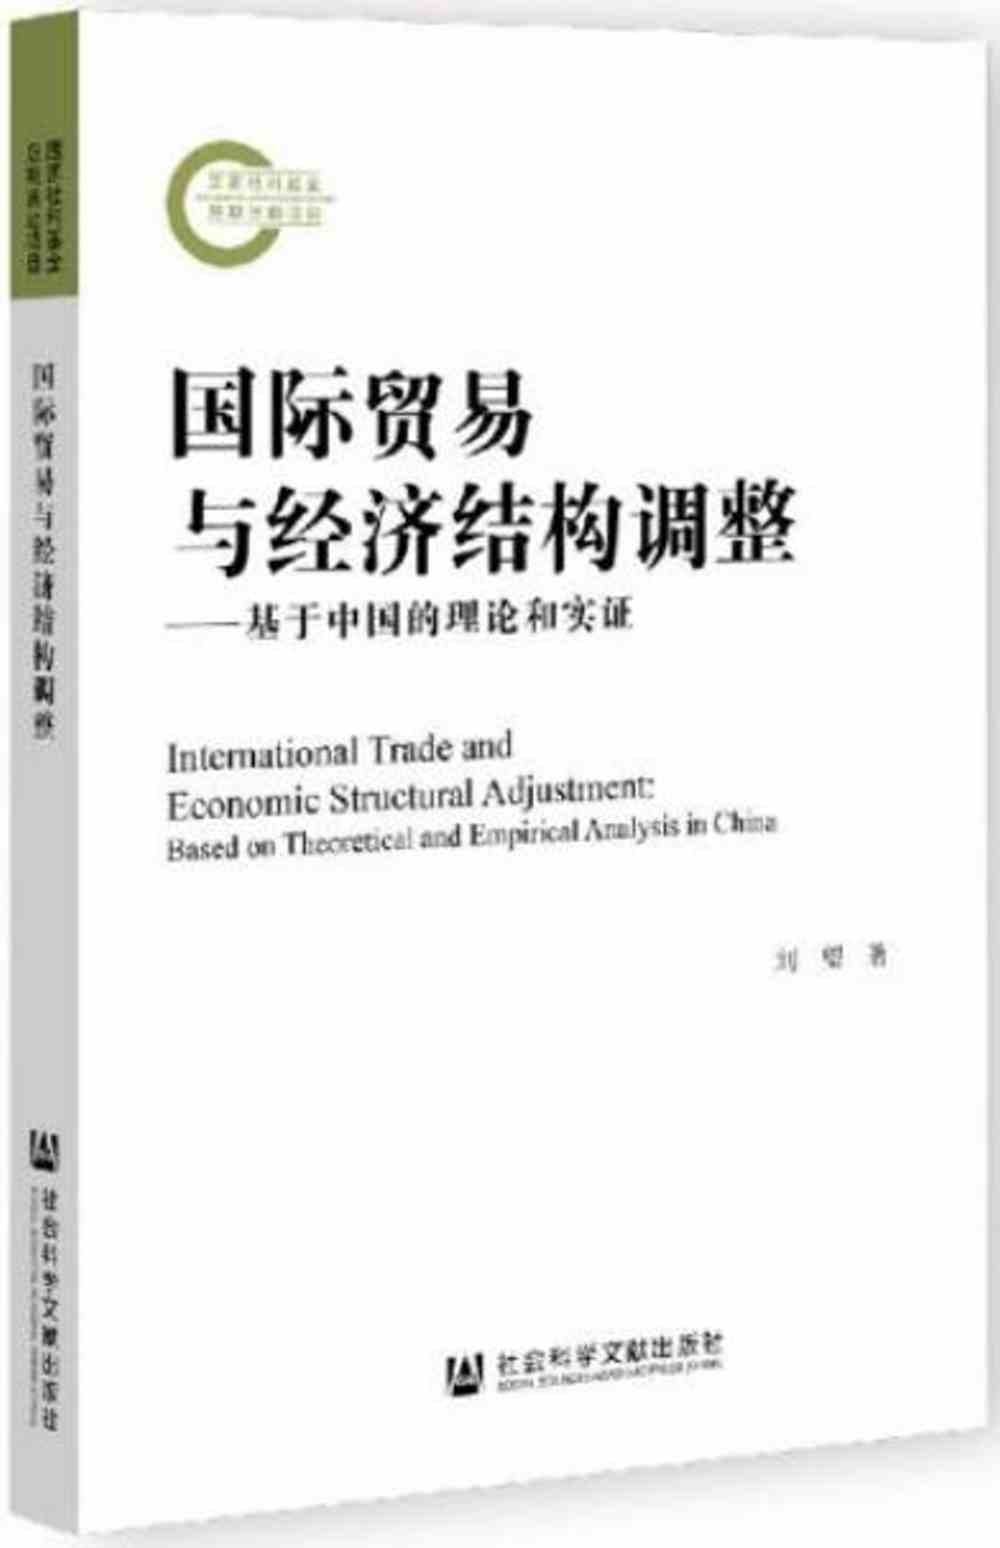 國際貿易與經濟結構調整--基於中國的理論和實證